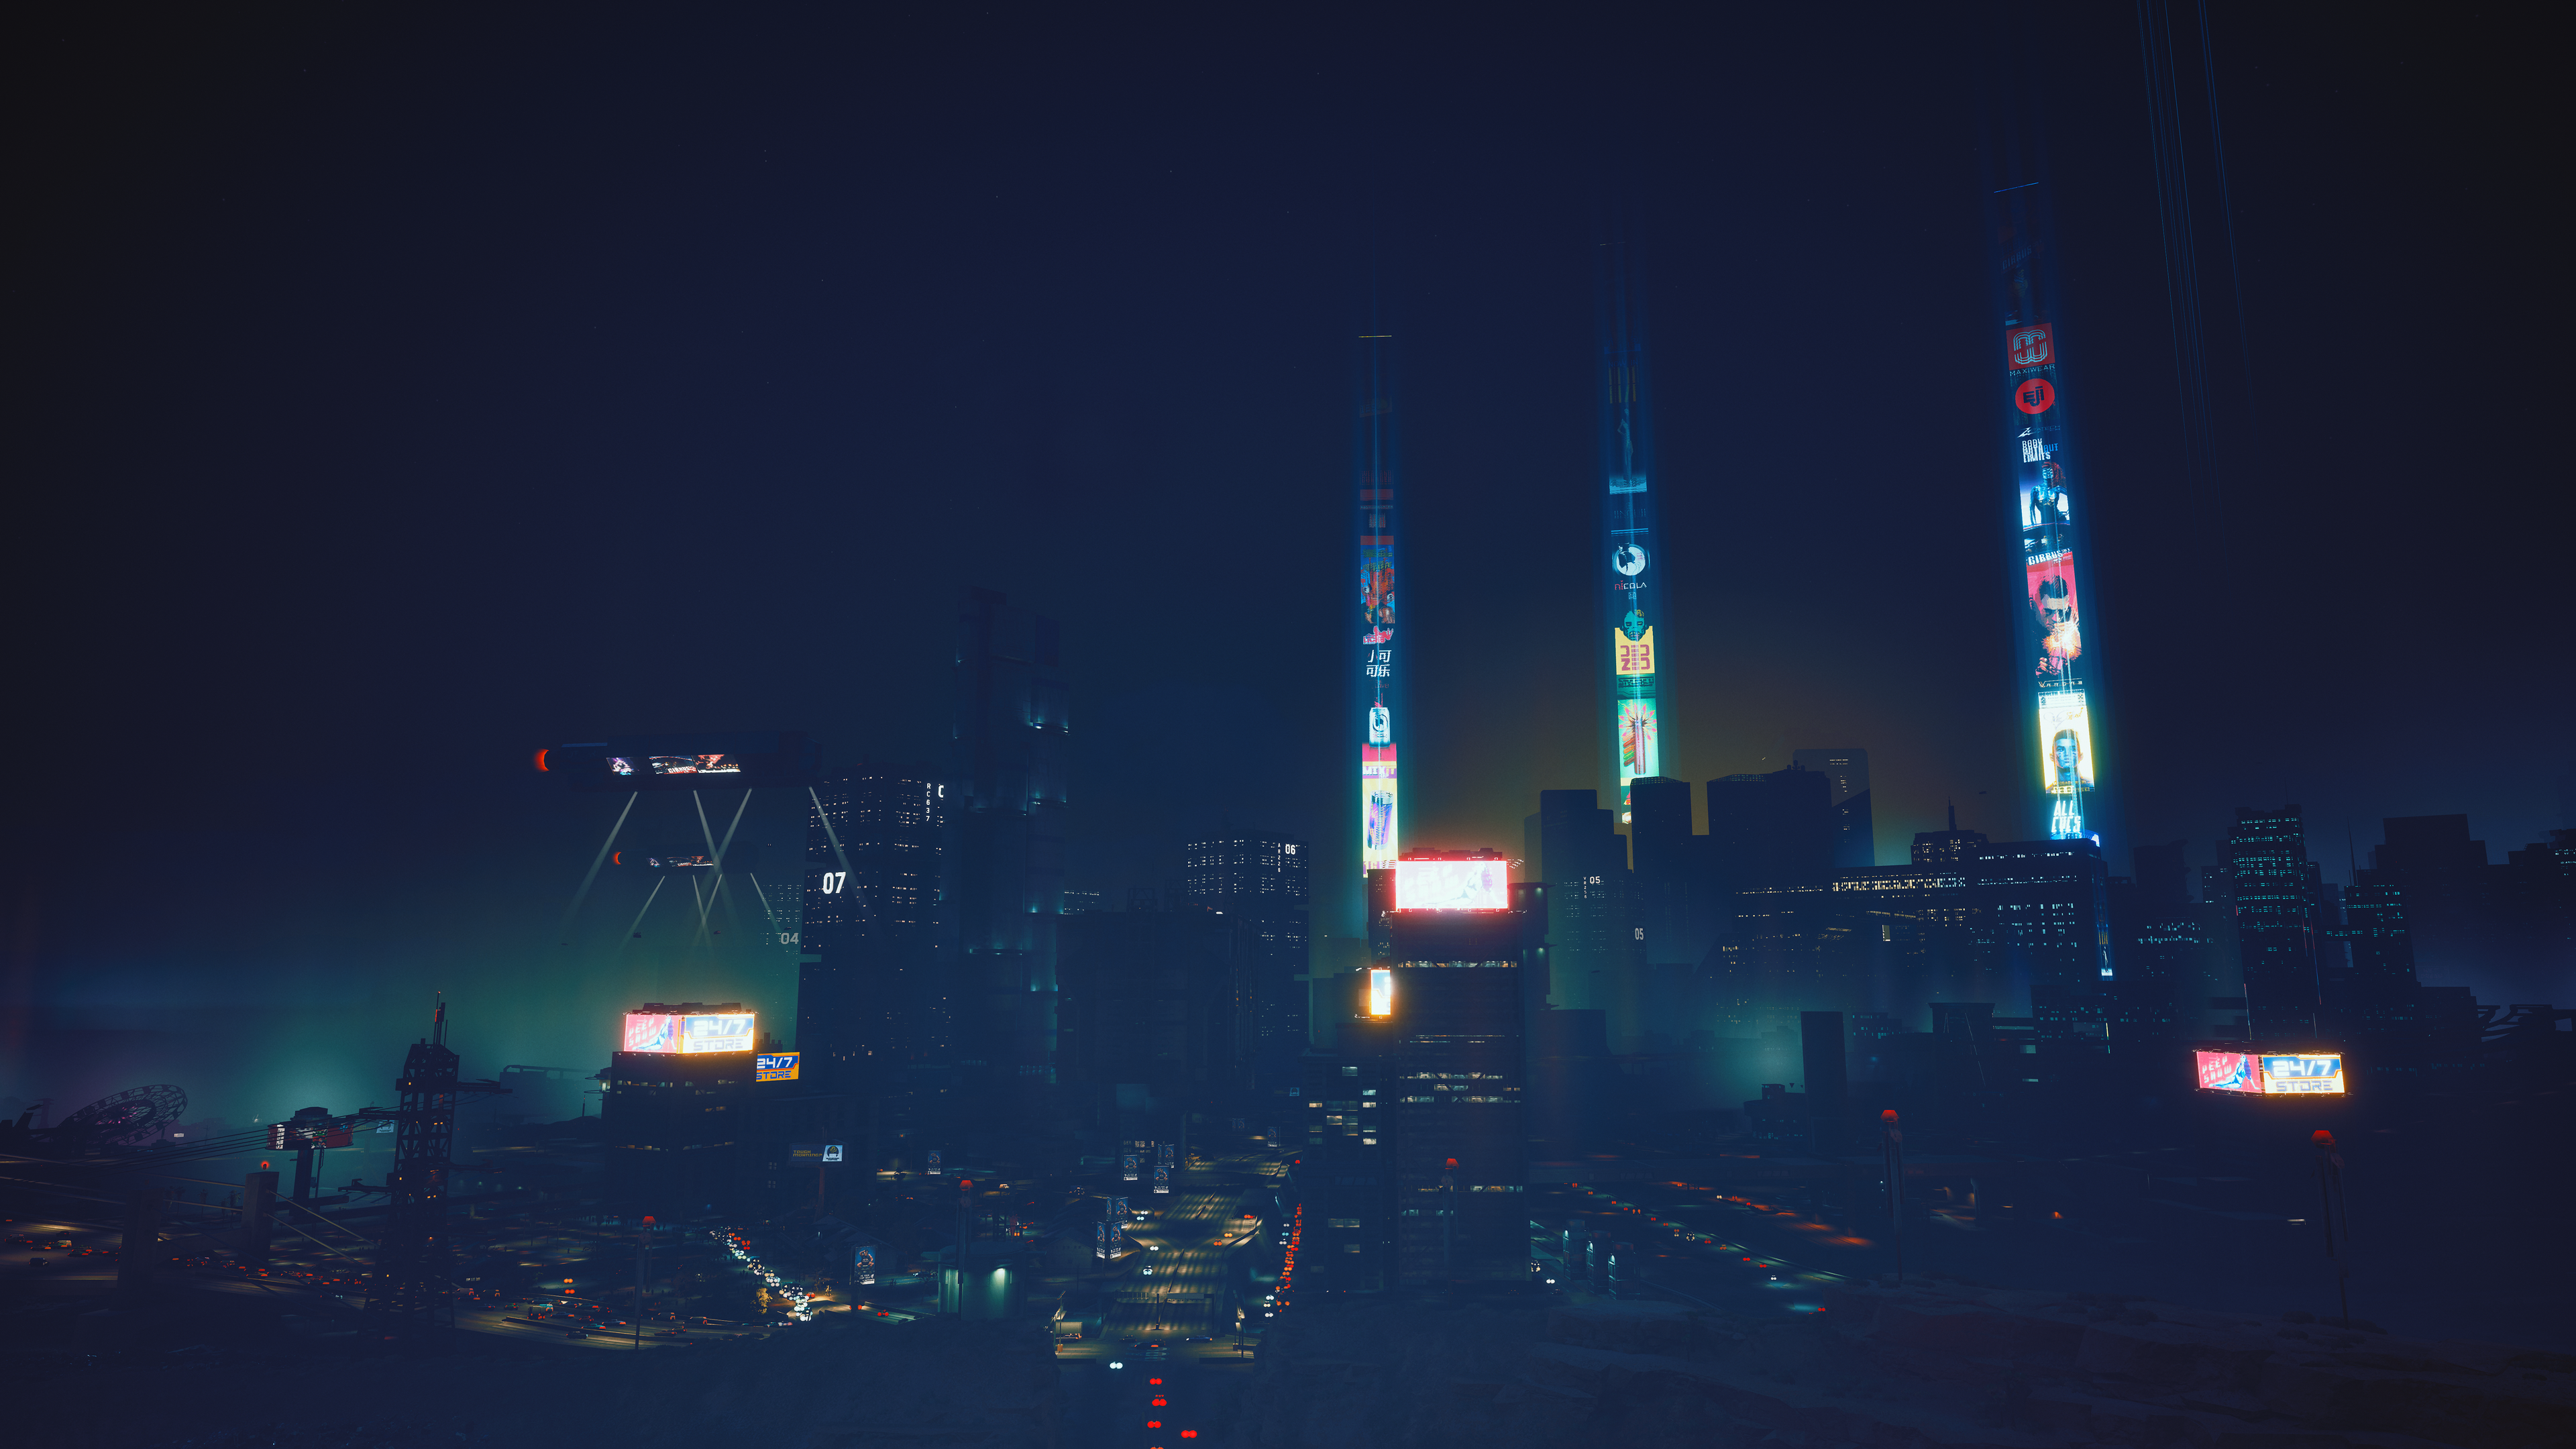 Night City 2077 [3840x2160]